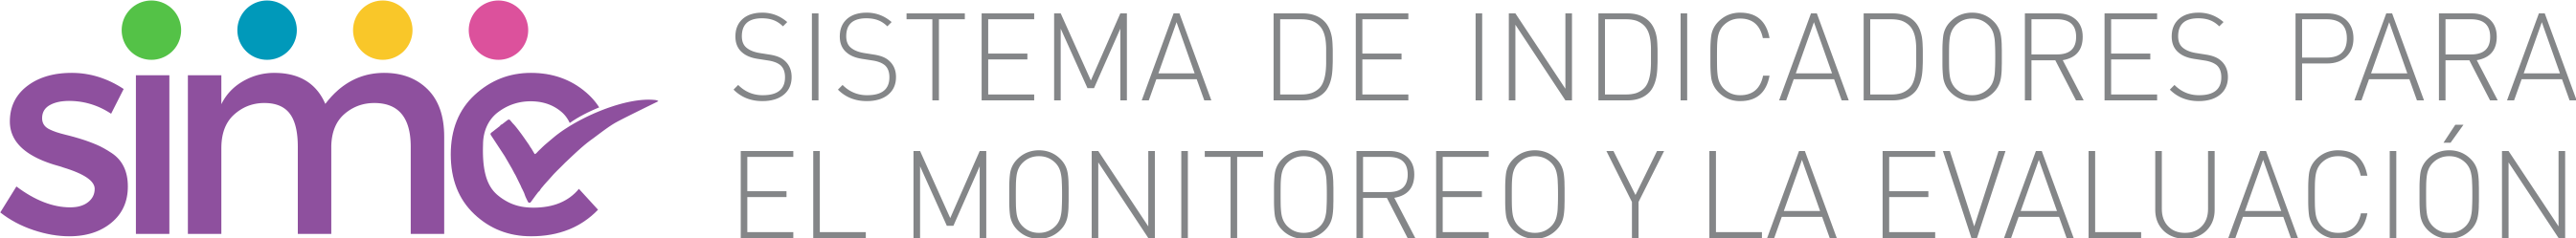 Logo Sistema de Indicadores para el Monitoreo y la Evaluación